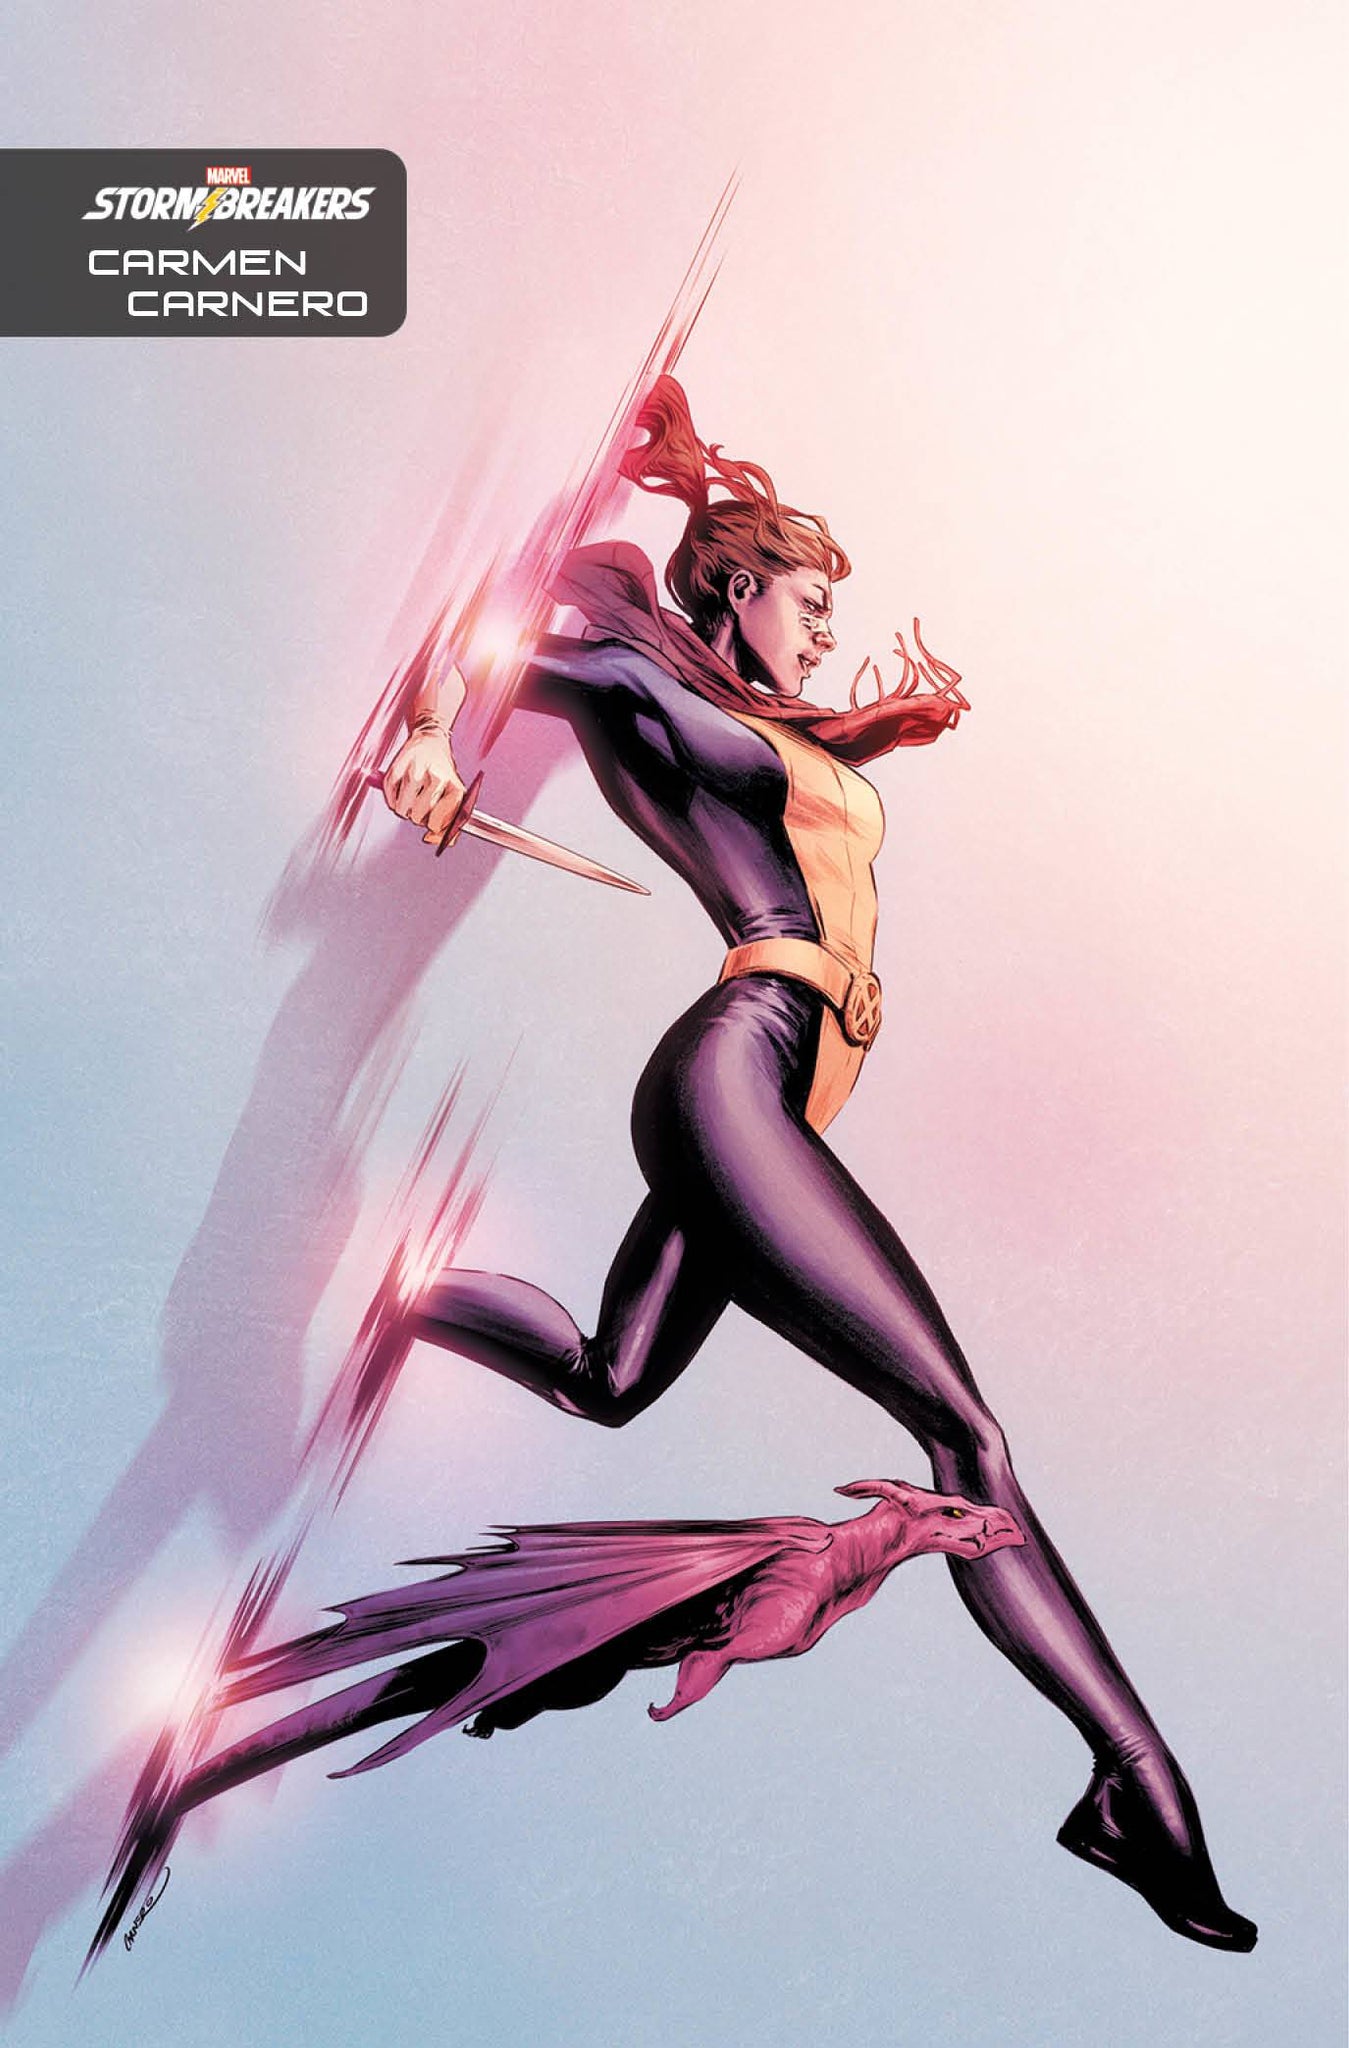 X-Men (2019) #15 One-Per-Store Carmen Carnero Stormbreakers Variant